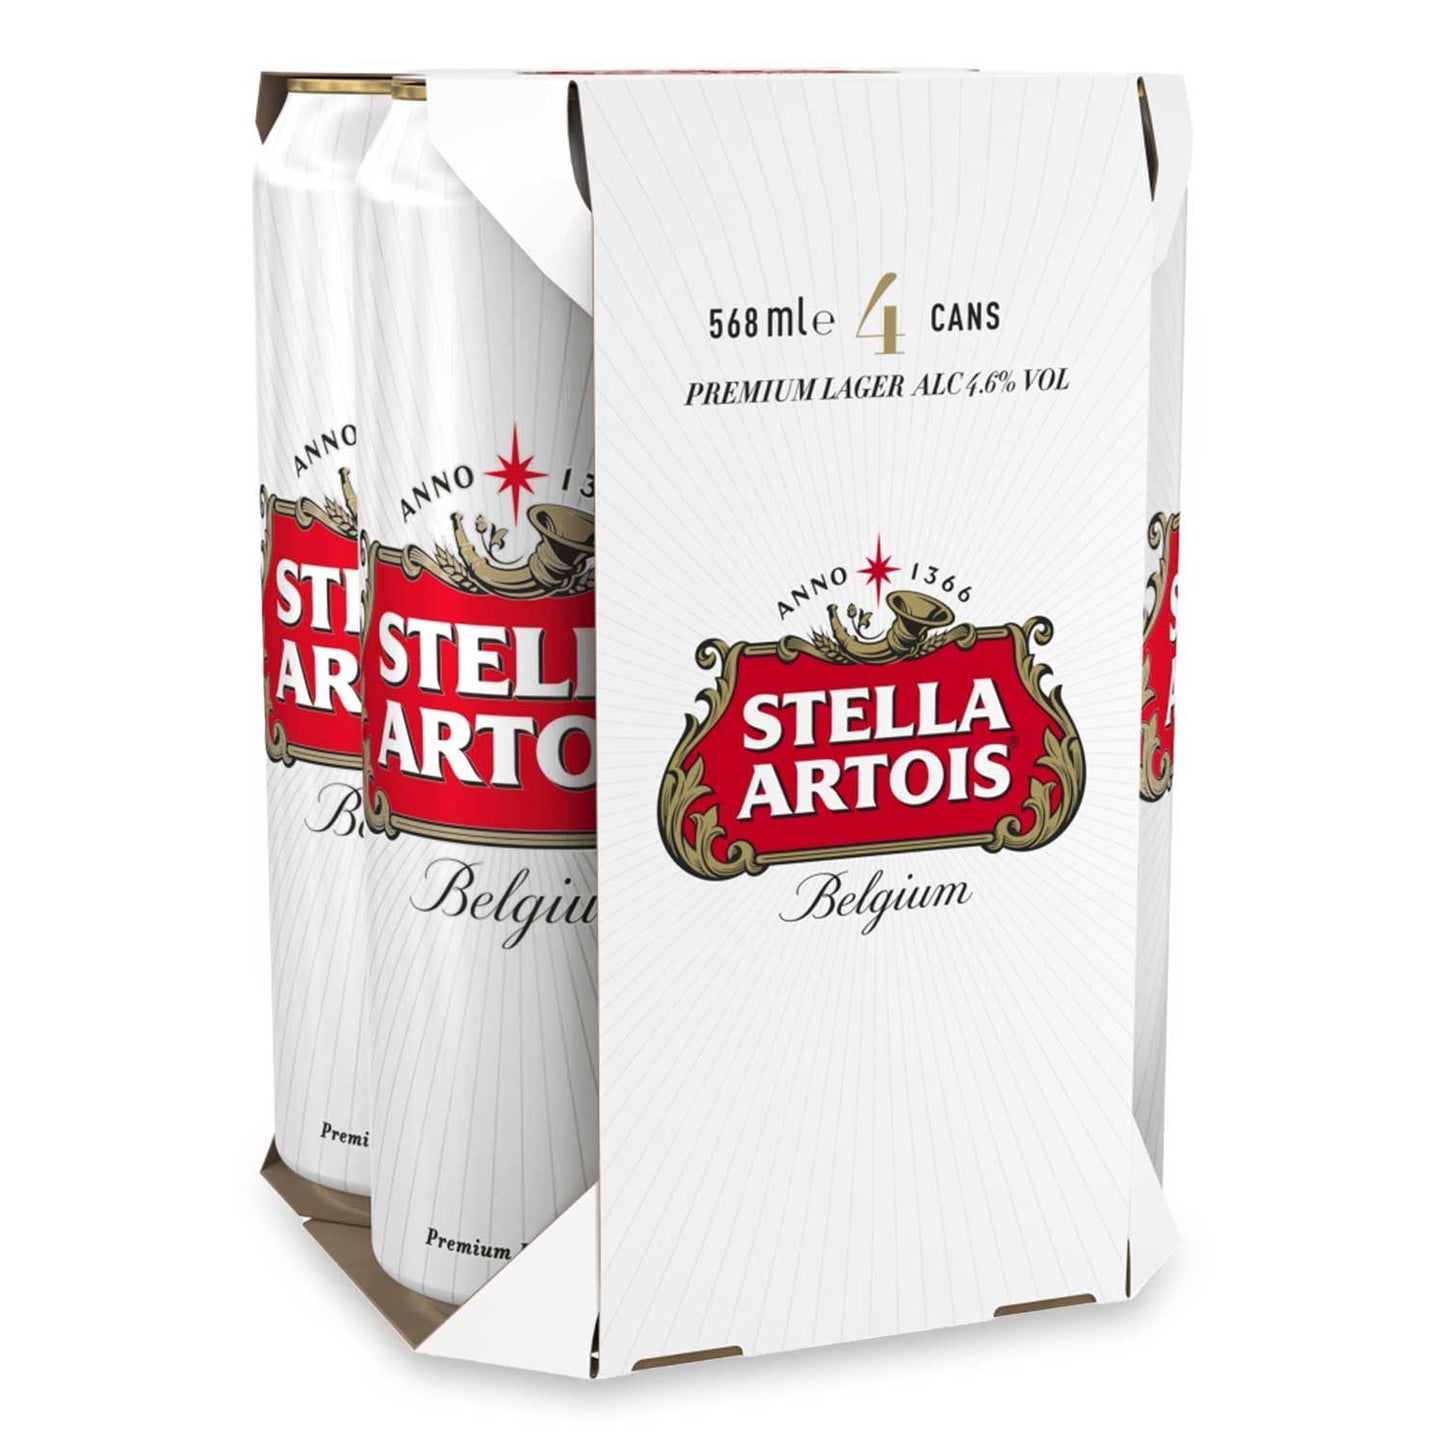 Stella Artois Belgium Premium Lager Beer Cans 4x568ml